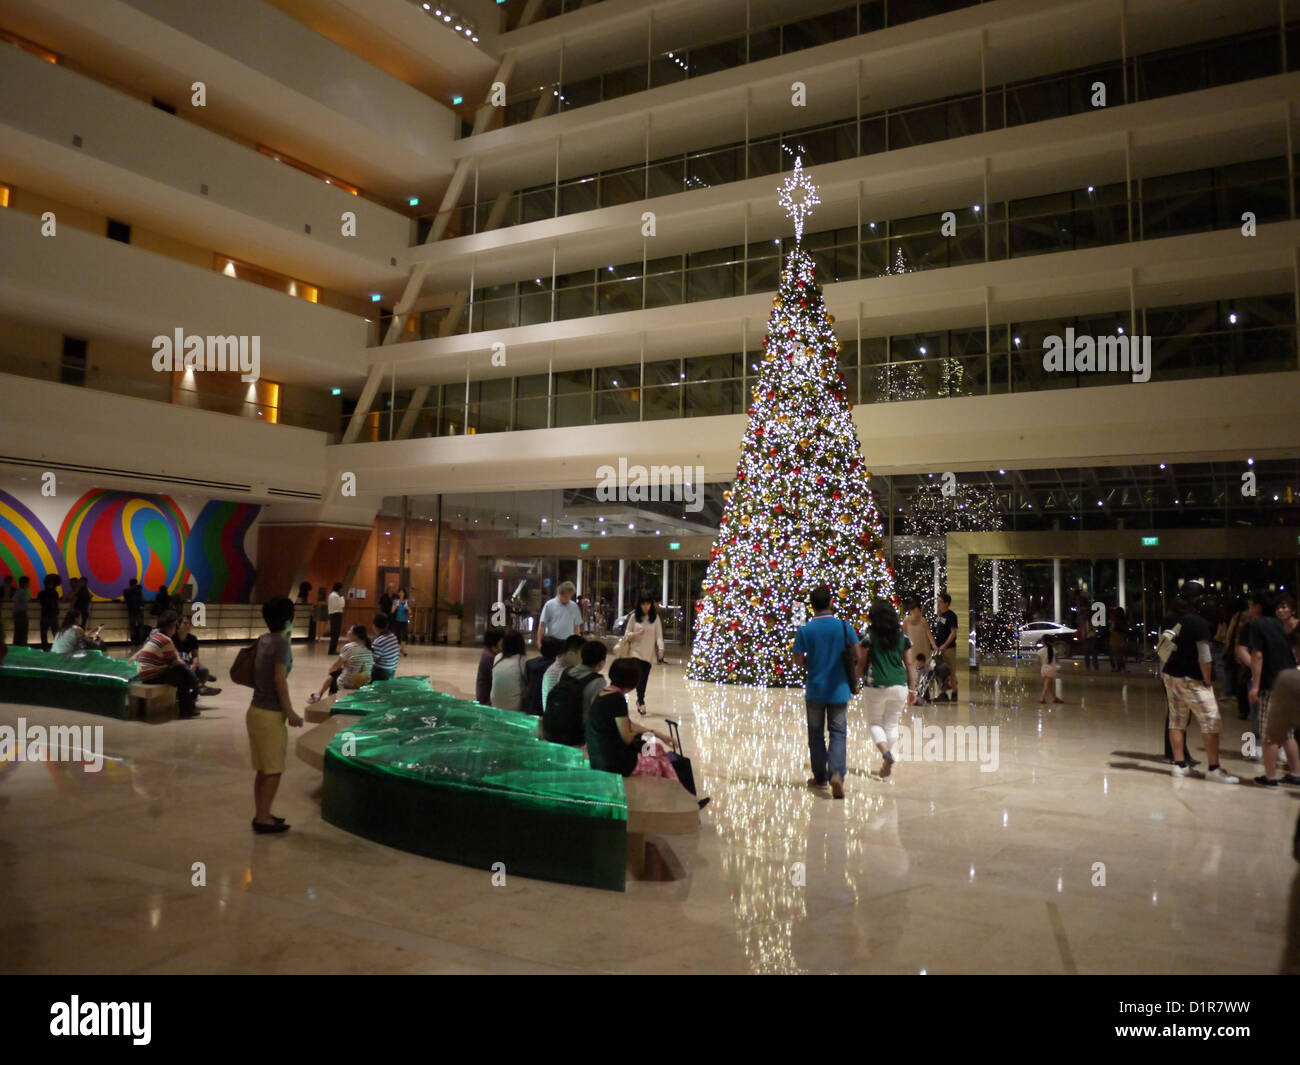 Marina bay sands hotel lobby Christmas tree Stock Photo